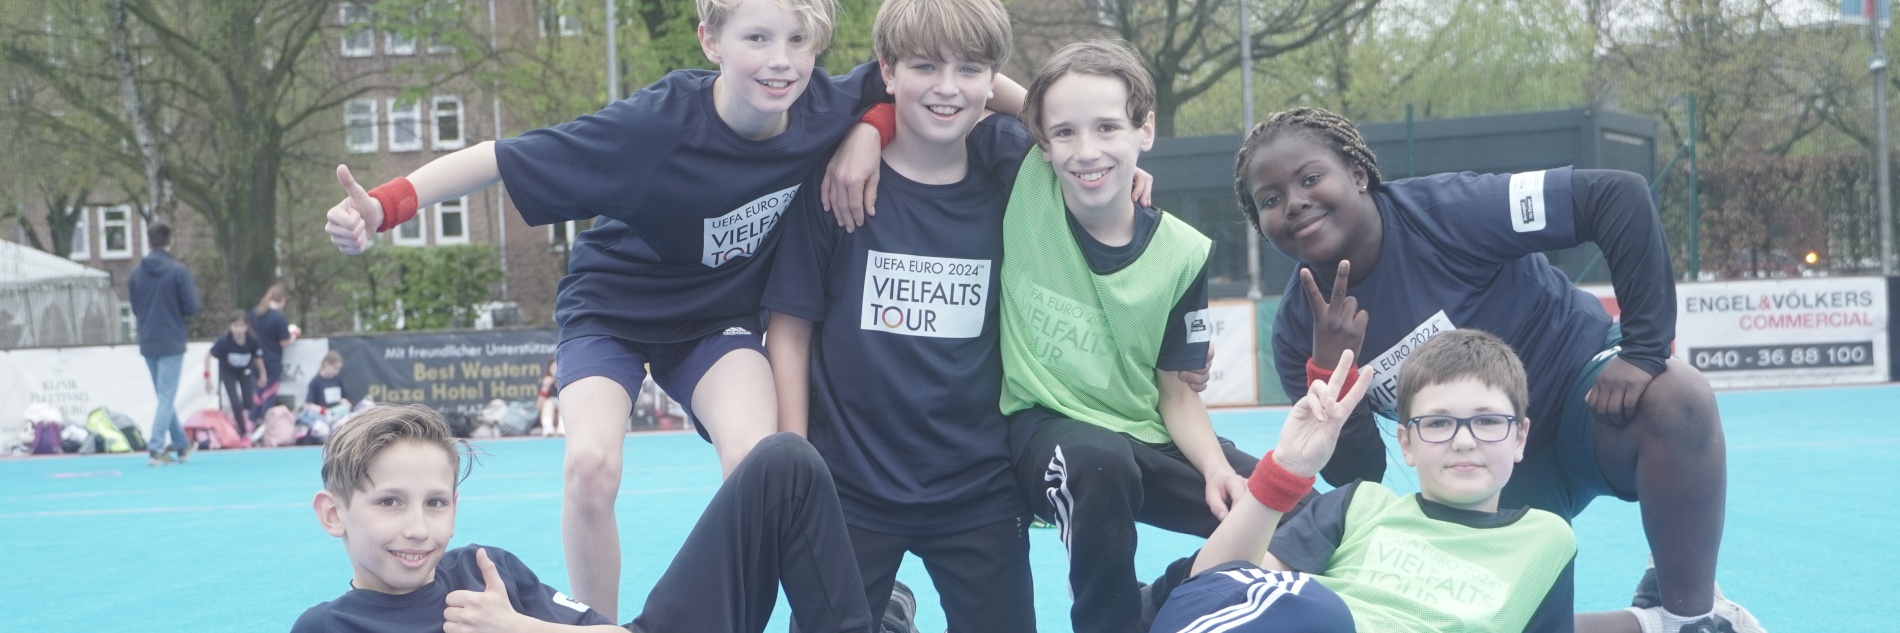 Sechs Kinder versammeln sich auf einem Sportplatz für ein Gruppenfoto und lächeln in die Kamera. Die Kinder tragen Trikots mit "UEFA EURO 20224 Vielfaltstour"-Aufschrift.